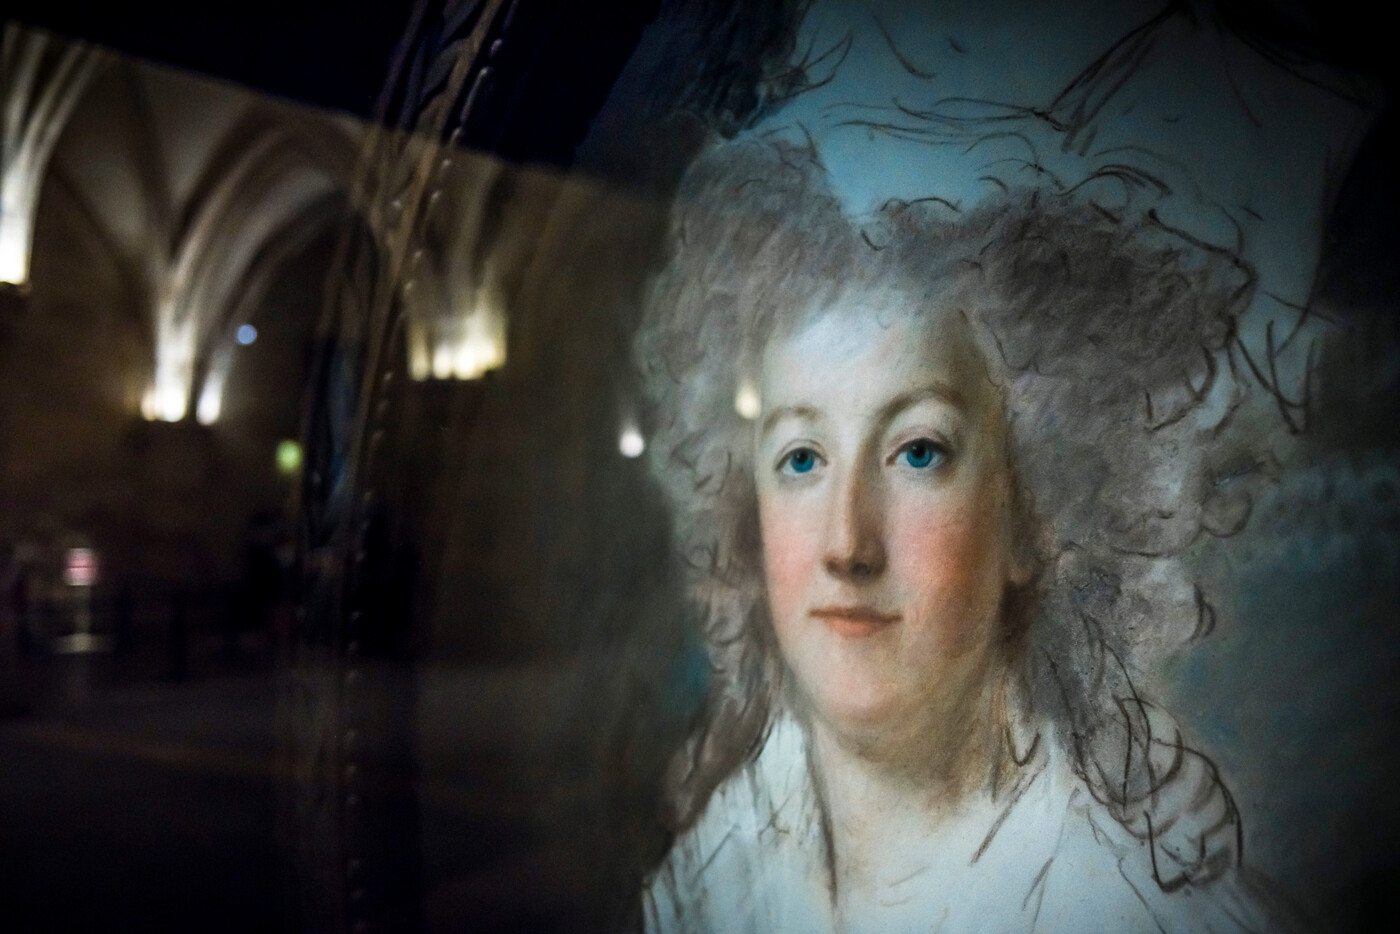 Historisches Bild: Ein Porträt von Marie-Antoinette, das im Rahmen einer Ausstellung im ehemaligen Justizpalast in Paris ausgestellt wurde, wo sie vor ihrem Tod inhaftiert war.